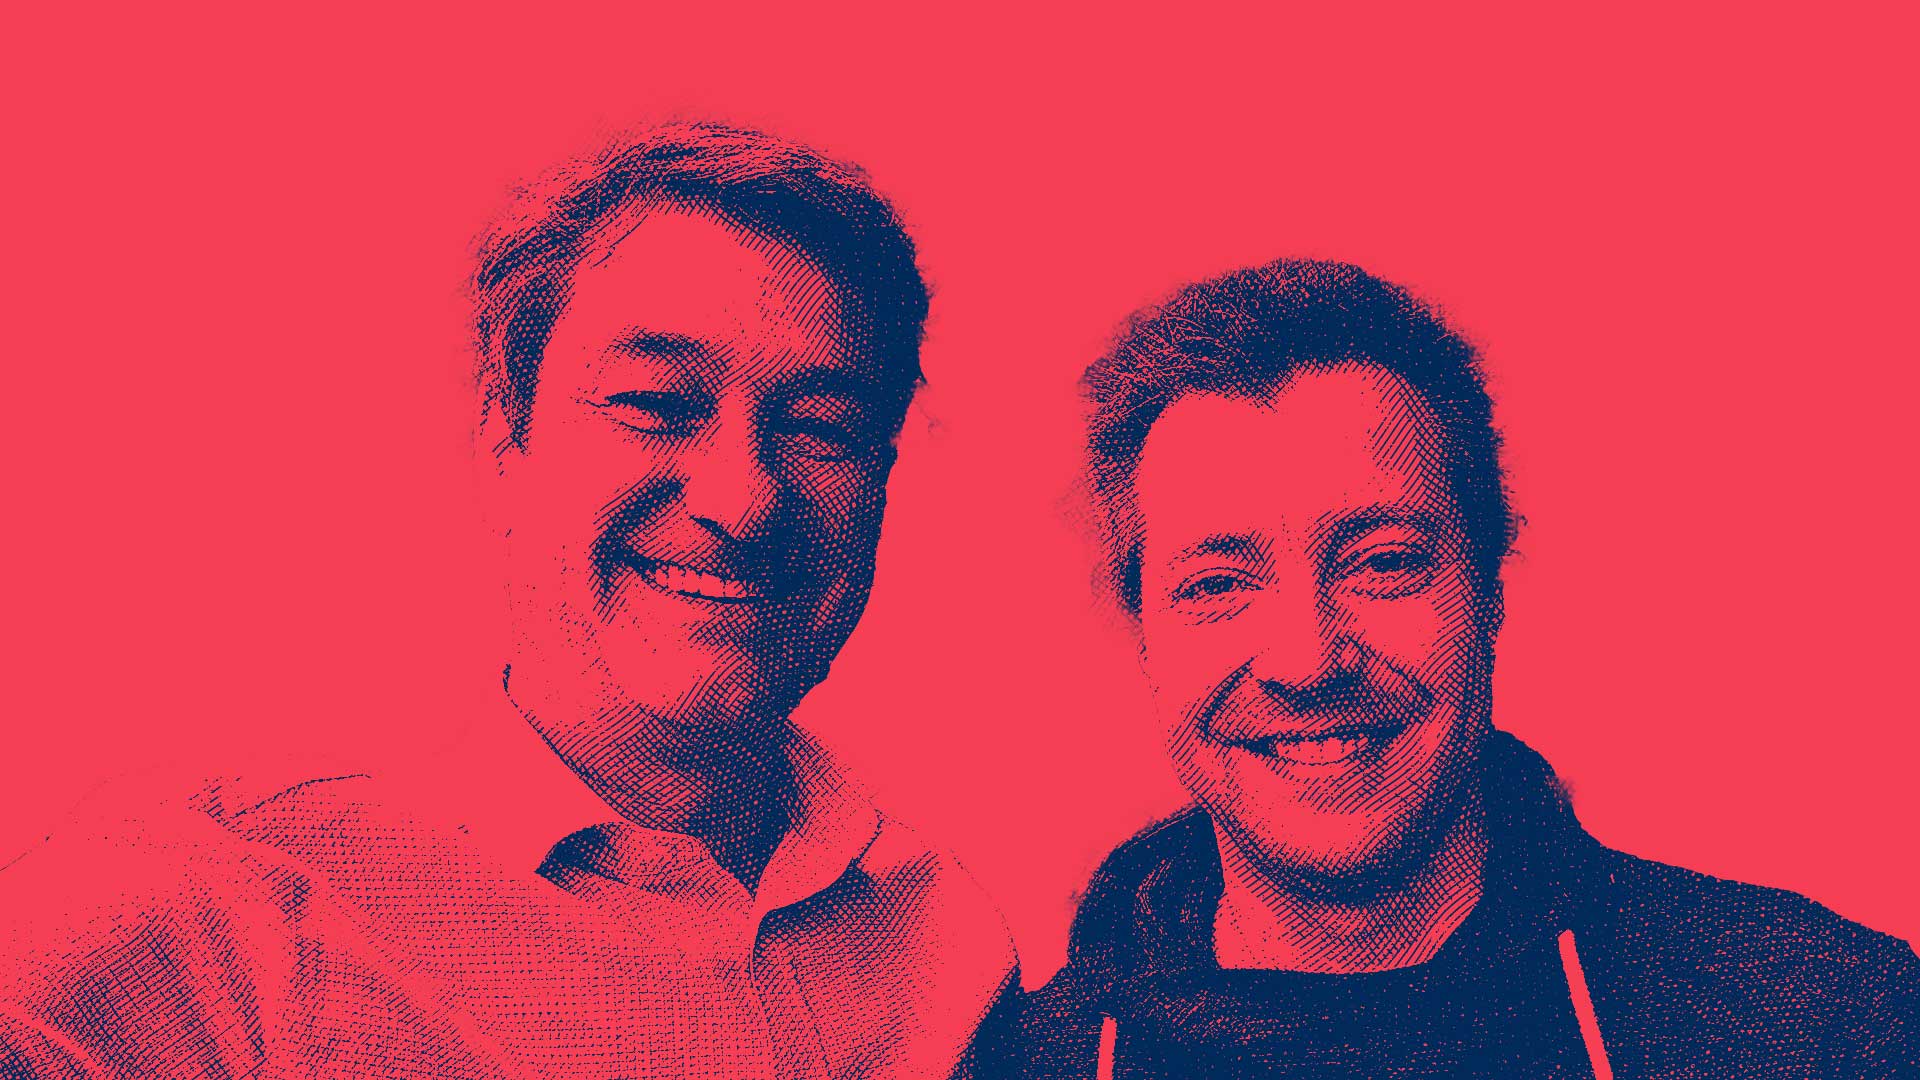 Porträt von Franz und Stefan, dem Team hinter AMGD, mit einem freundlichen Lächeln im stilisierten rot-gefilterten Bild.